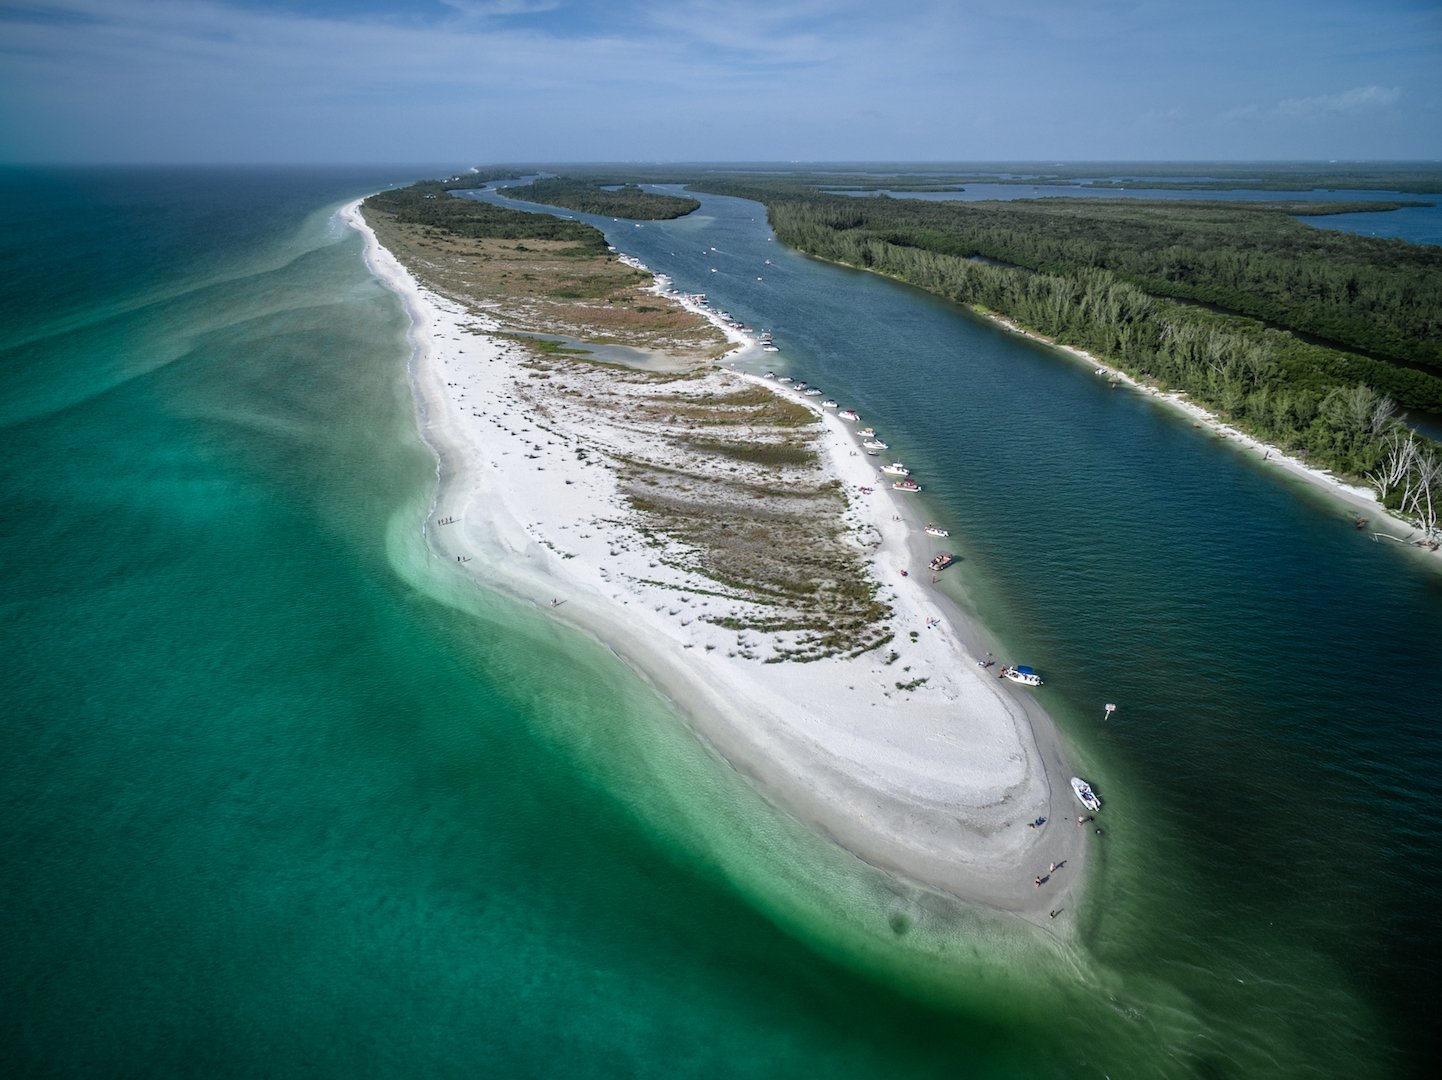 Keewaydin Island in Florida